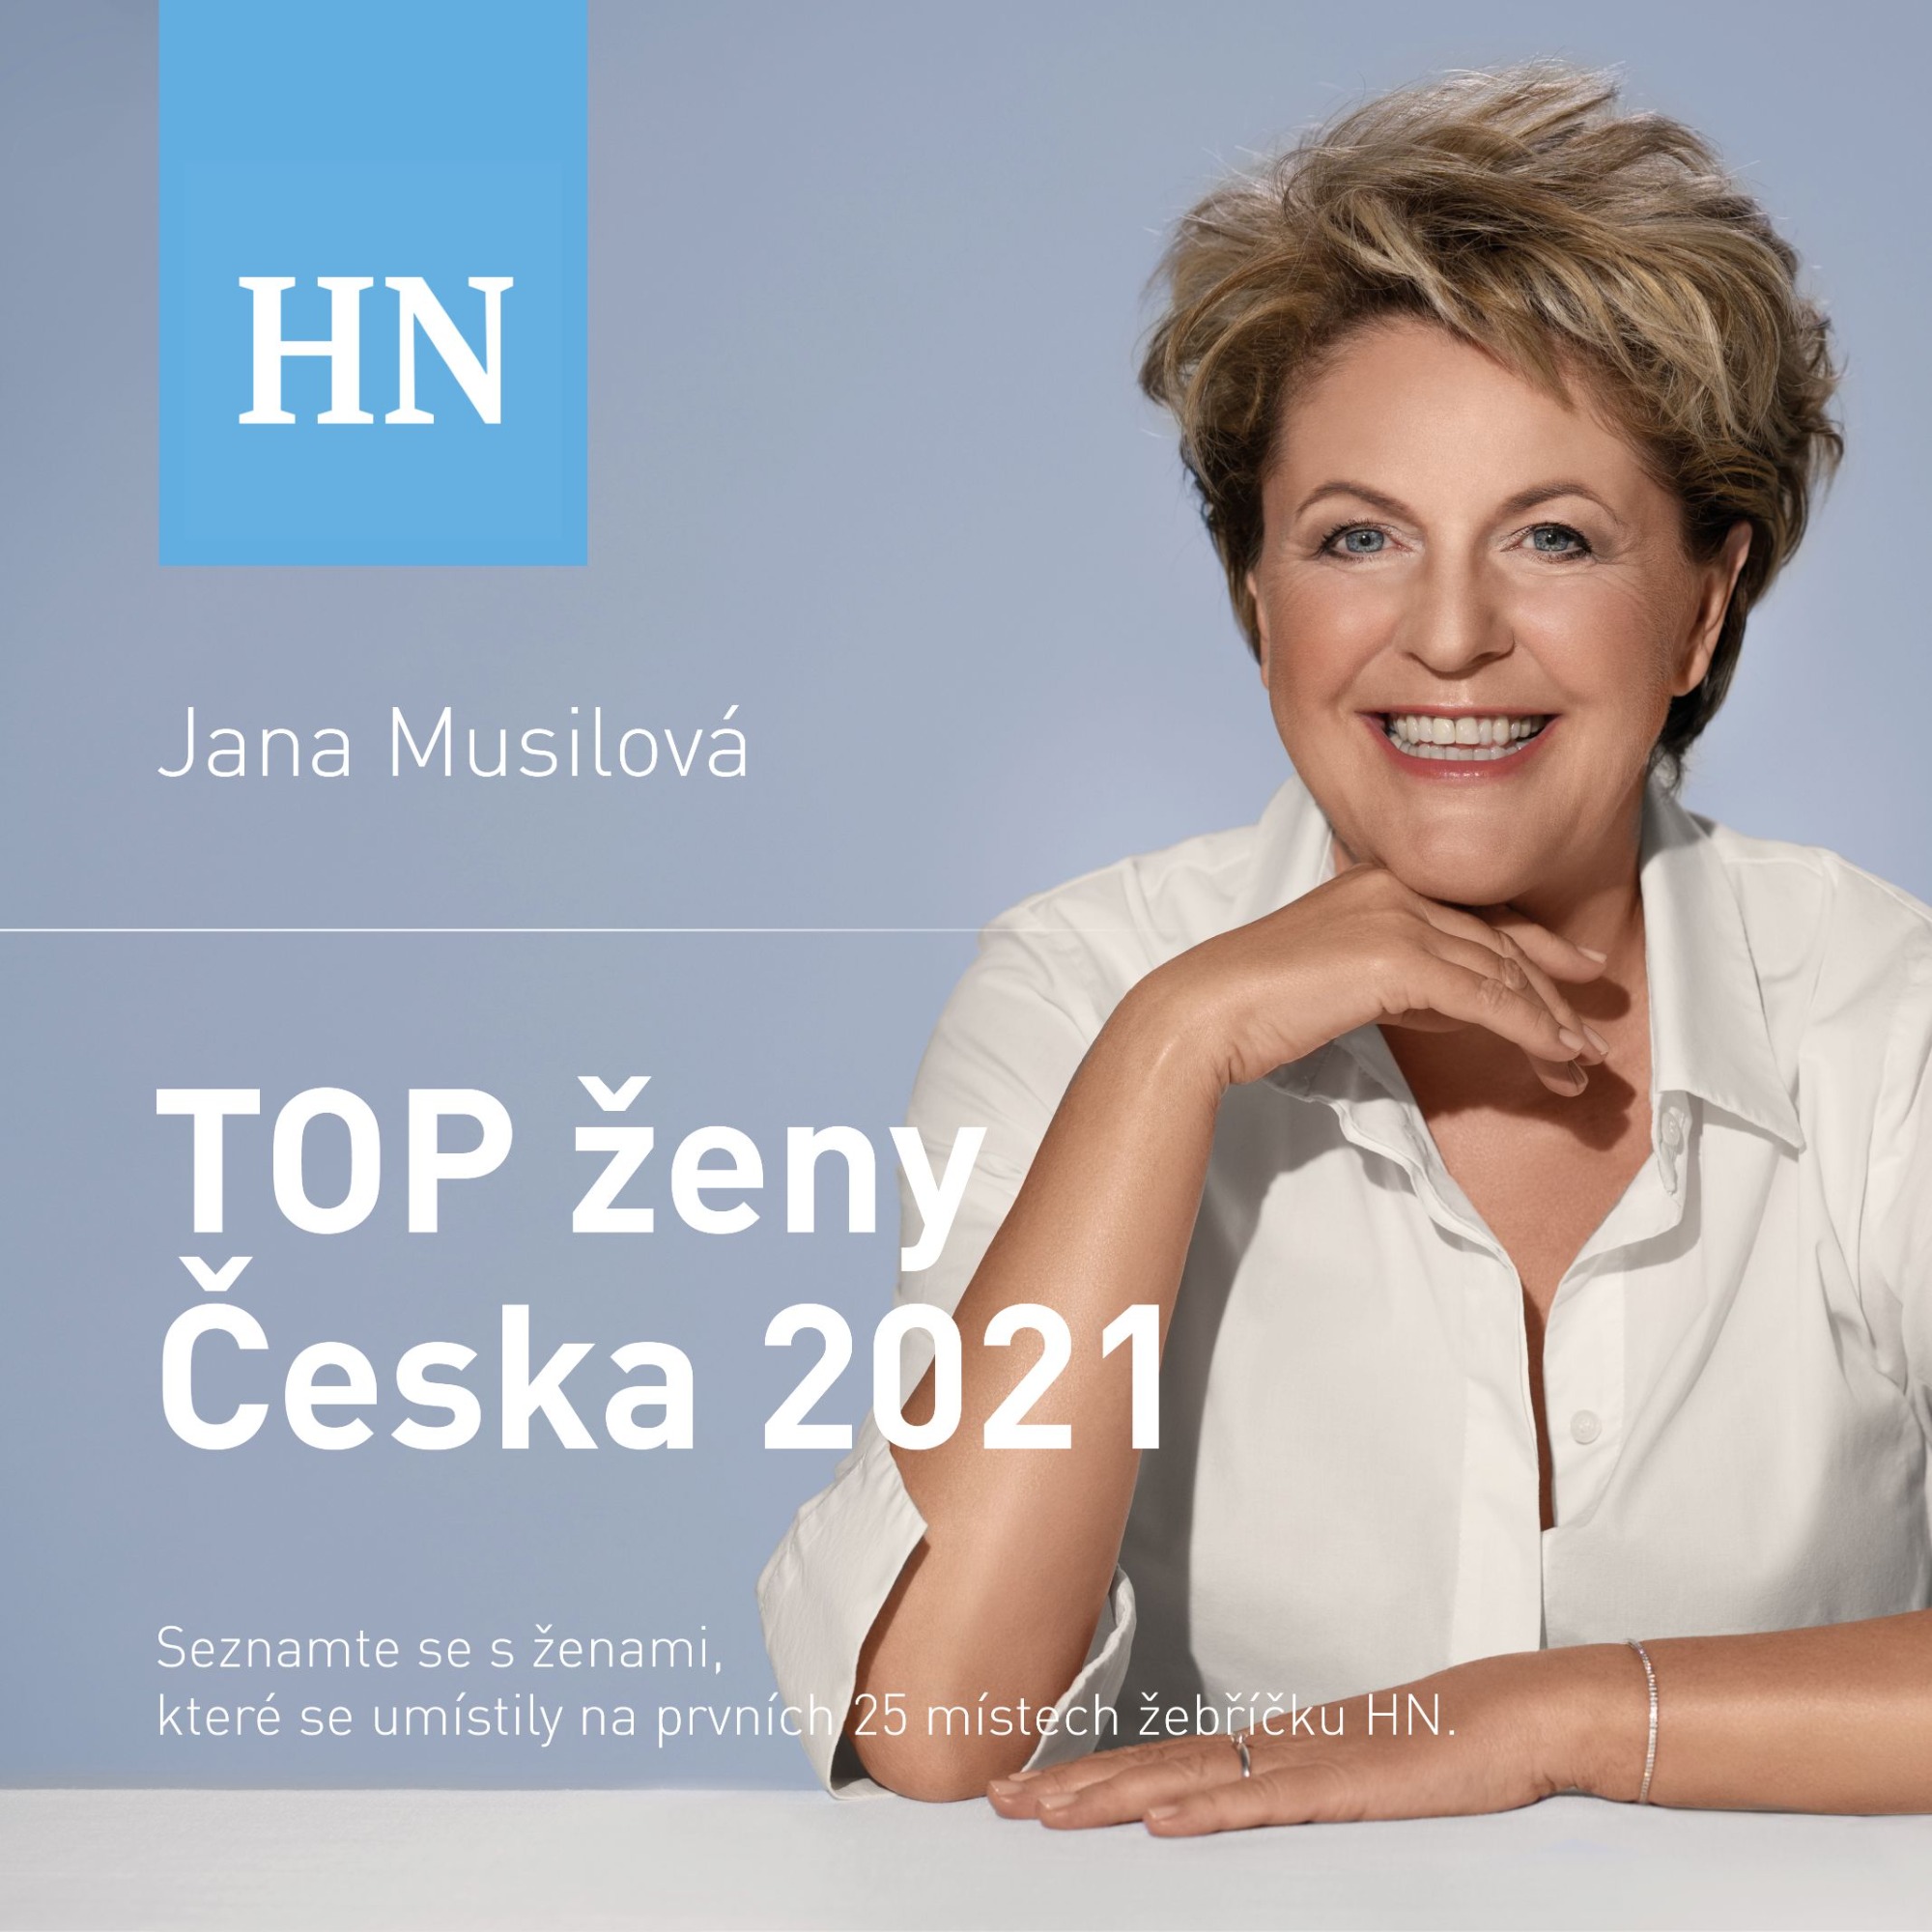 Seznamte se s TOP ženami Česka 2021